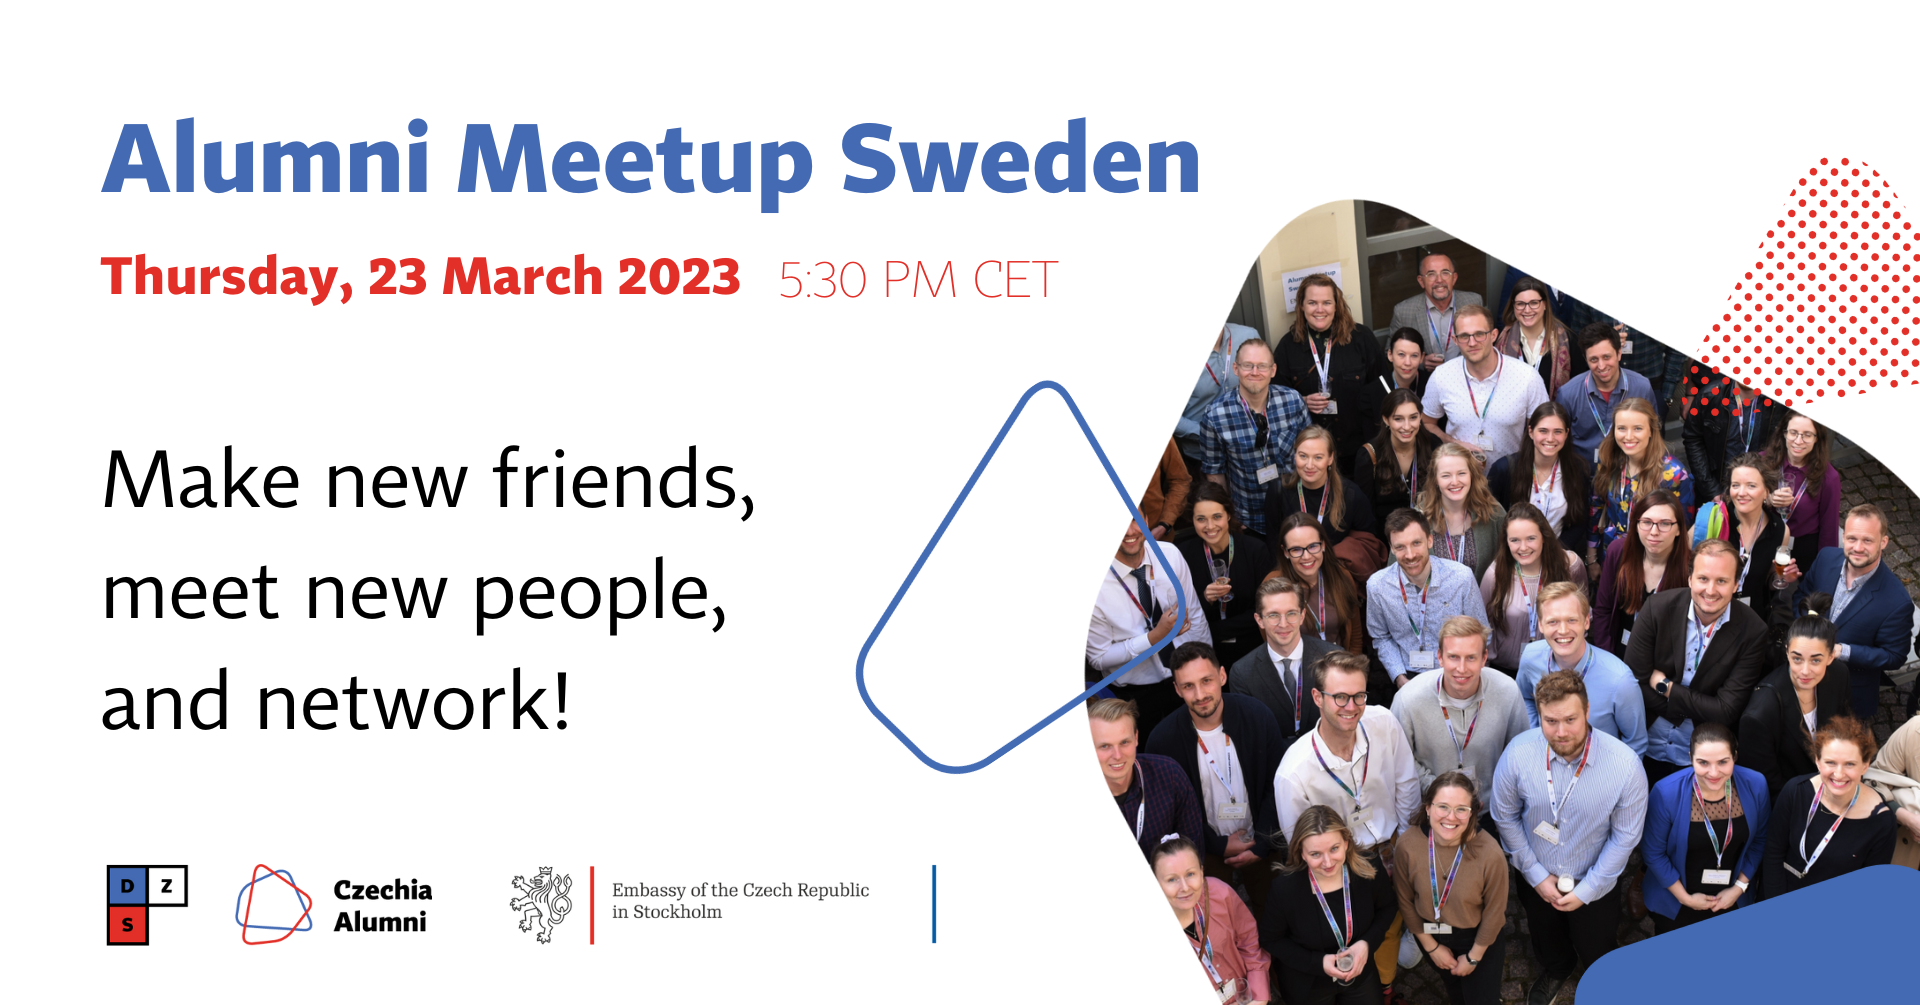 Alumni Meetup Sweden 2023